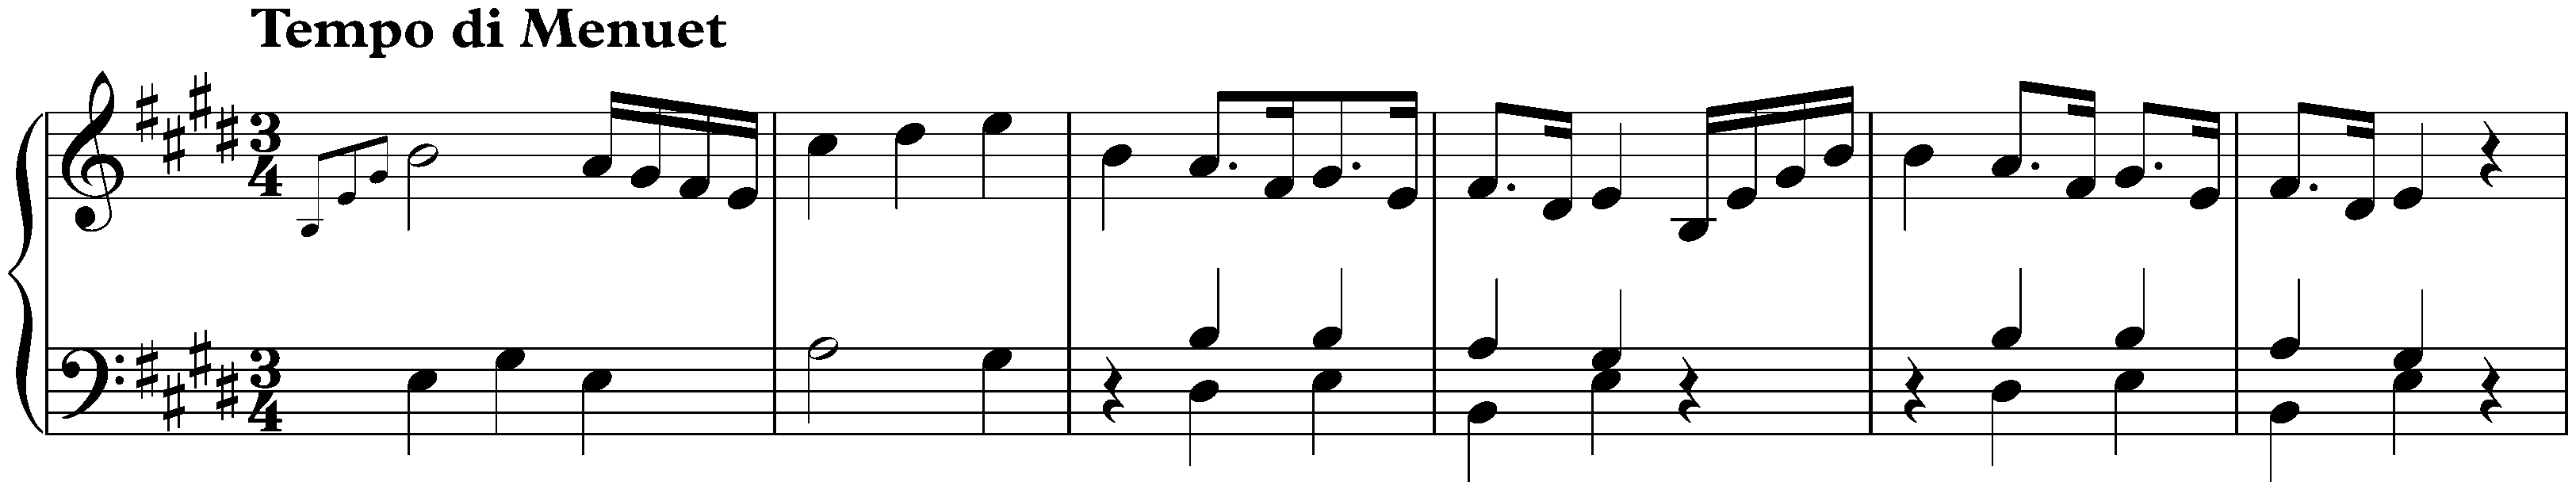 Sonata in E minor, Hob. XVI:47bis; 3. Finale: Tempo di Menuet